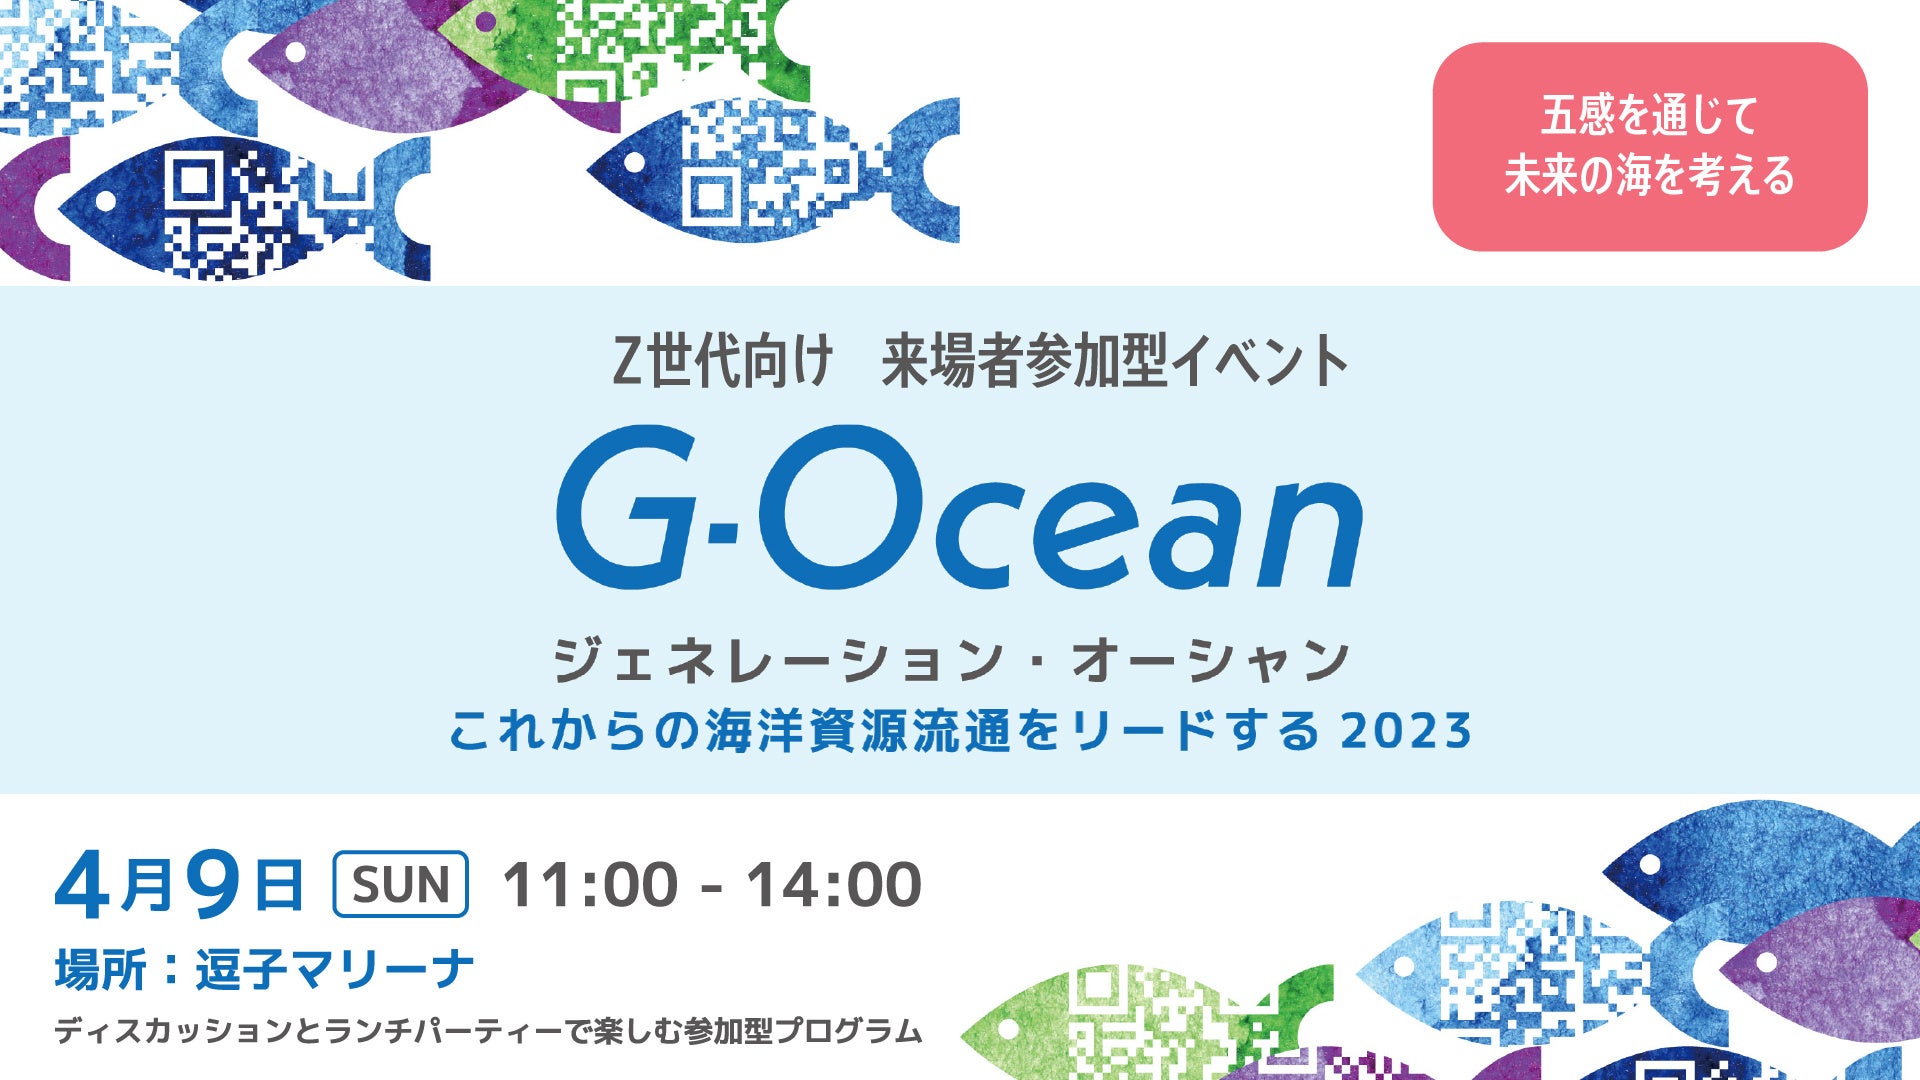 4月9日(日)Z世代と「海のトレーサビリティ」を学び、味わうイベント『G-Ocean(ジェネレーション・オーシャン)』を逗子で開催。のサブ画像1